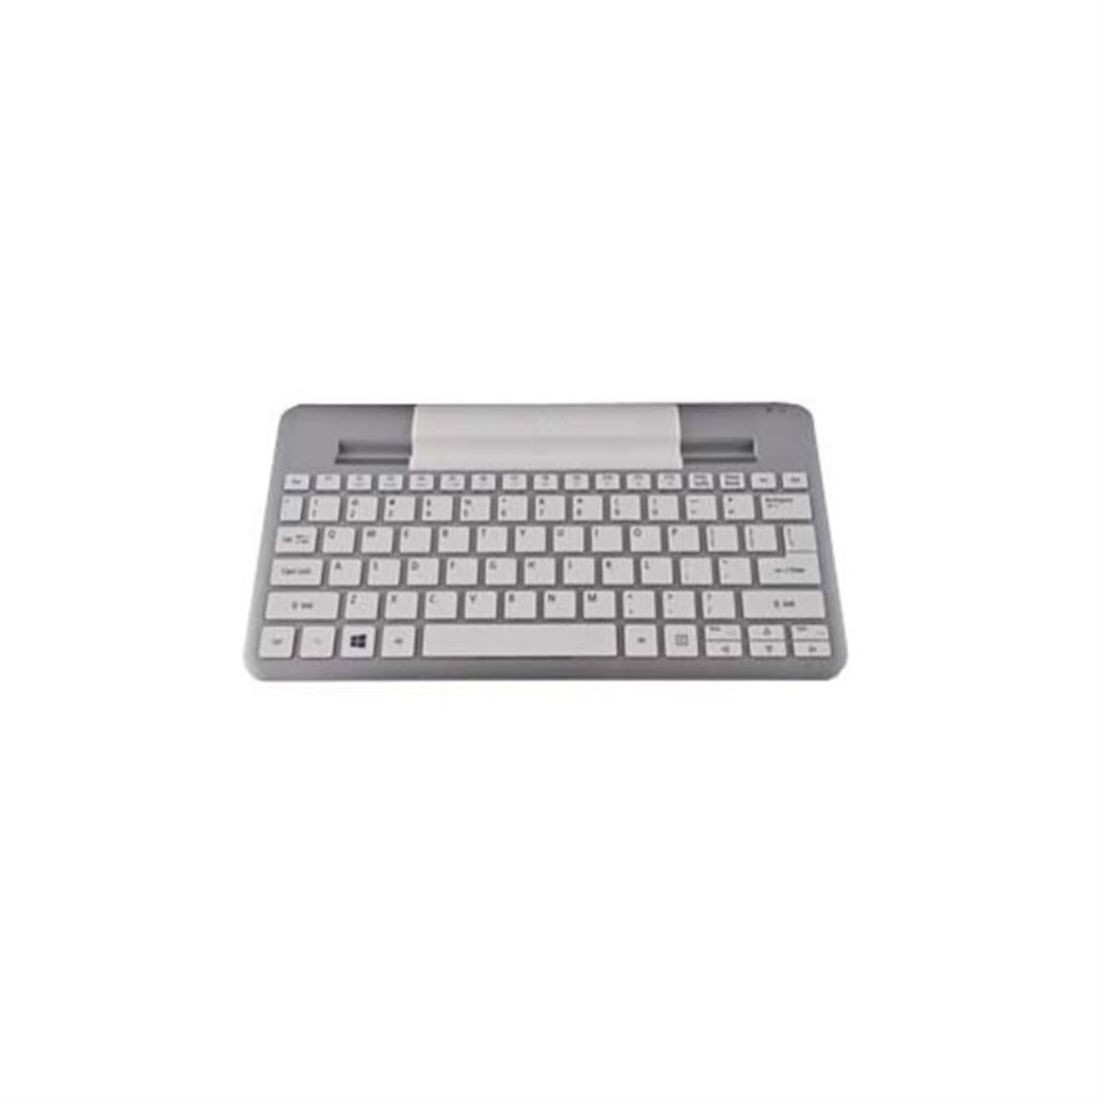 Acer NP.KBD11.012 Wireless BT Keyboard